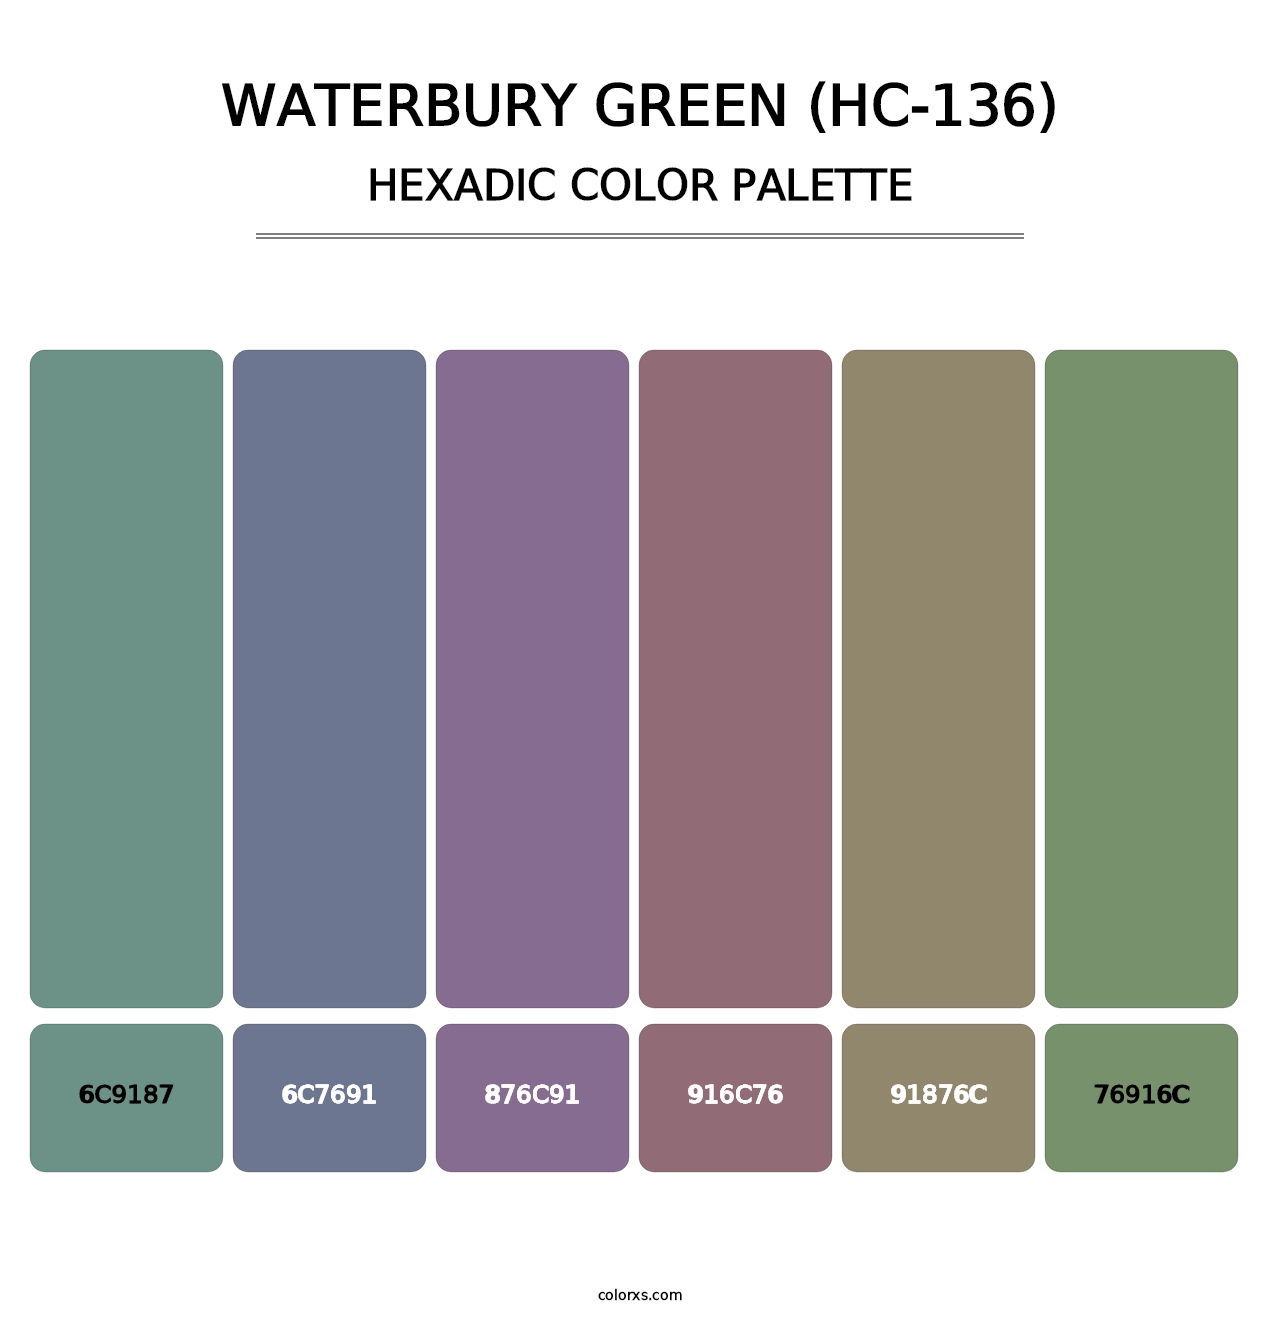 Waterbury Green (HC-136) - Hexadic Color Palette